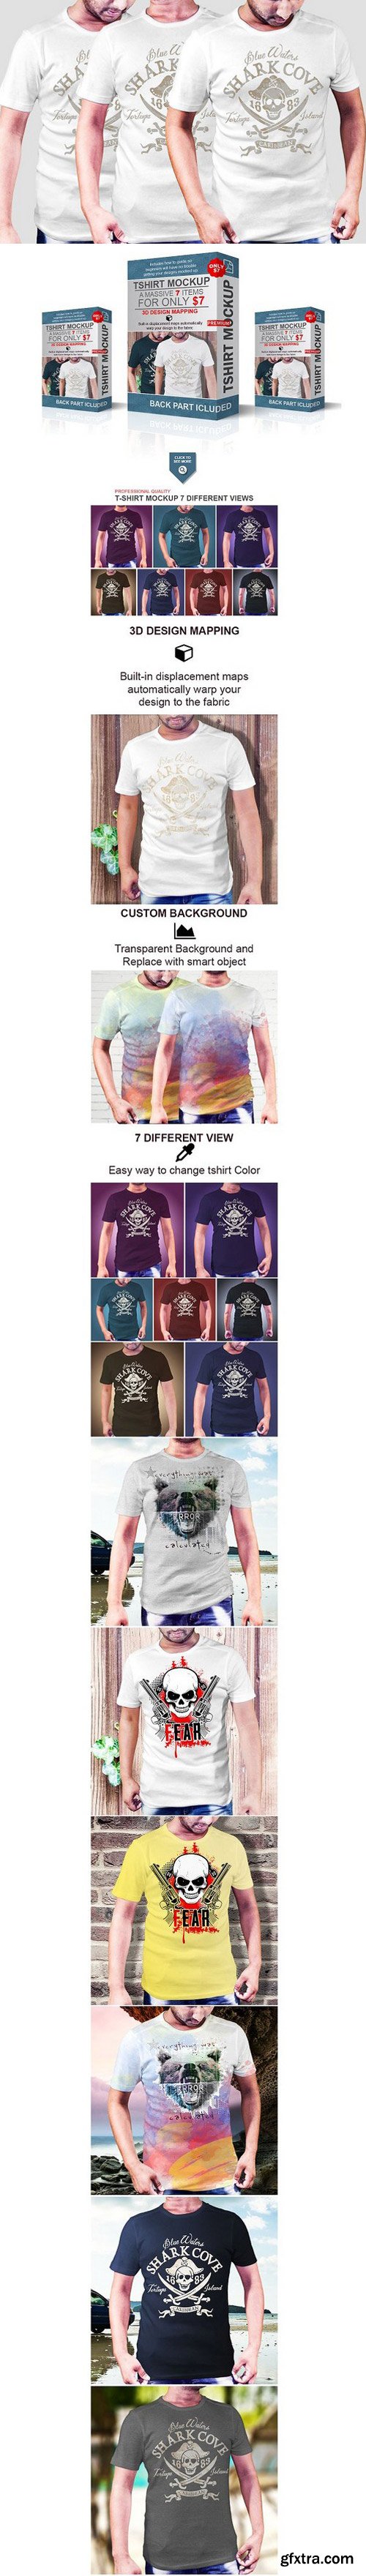 CM - Realistic Tshirt Mockup Male Version 1655209